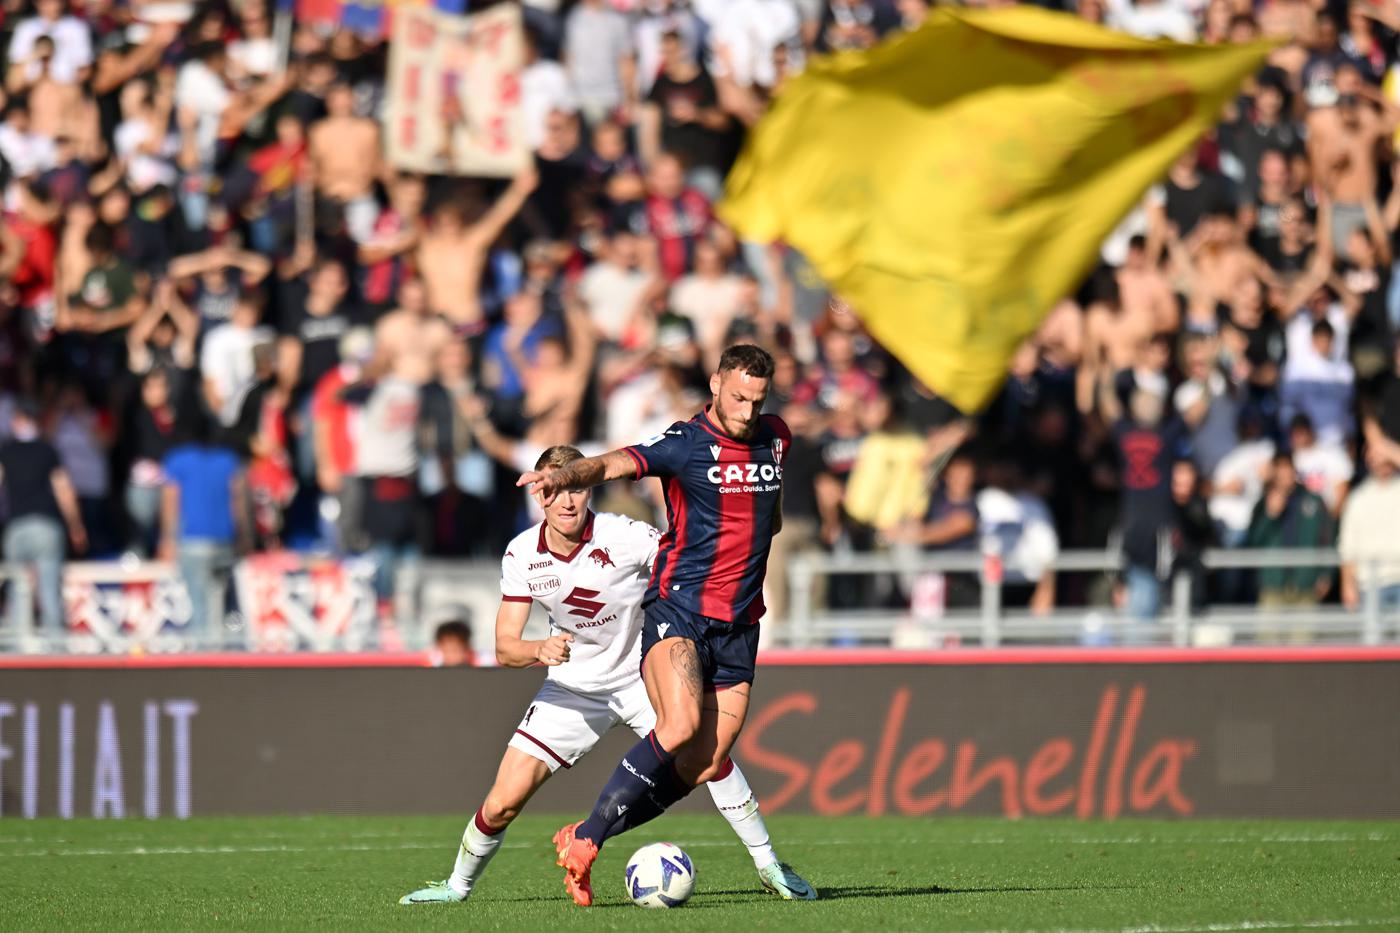 Turin - Bologna - 1:0. Italienische Meisterschaft, 25. Runde. Spielbericht, Statistiken